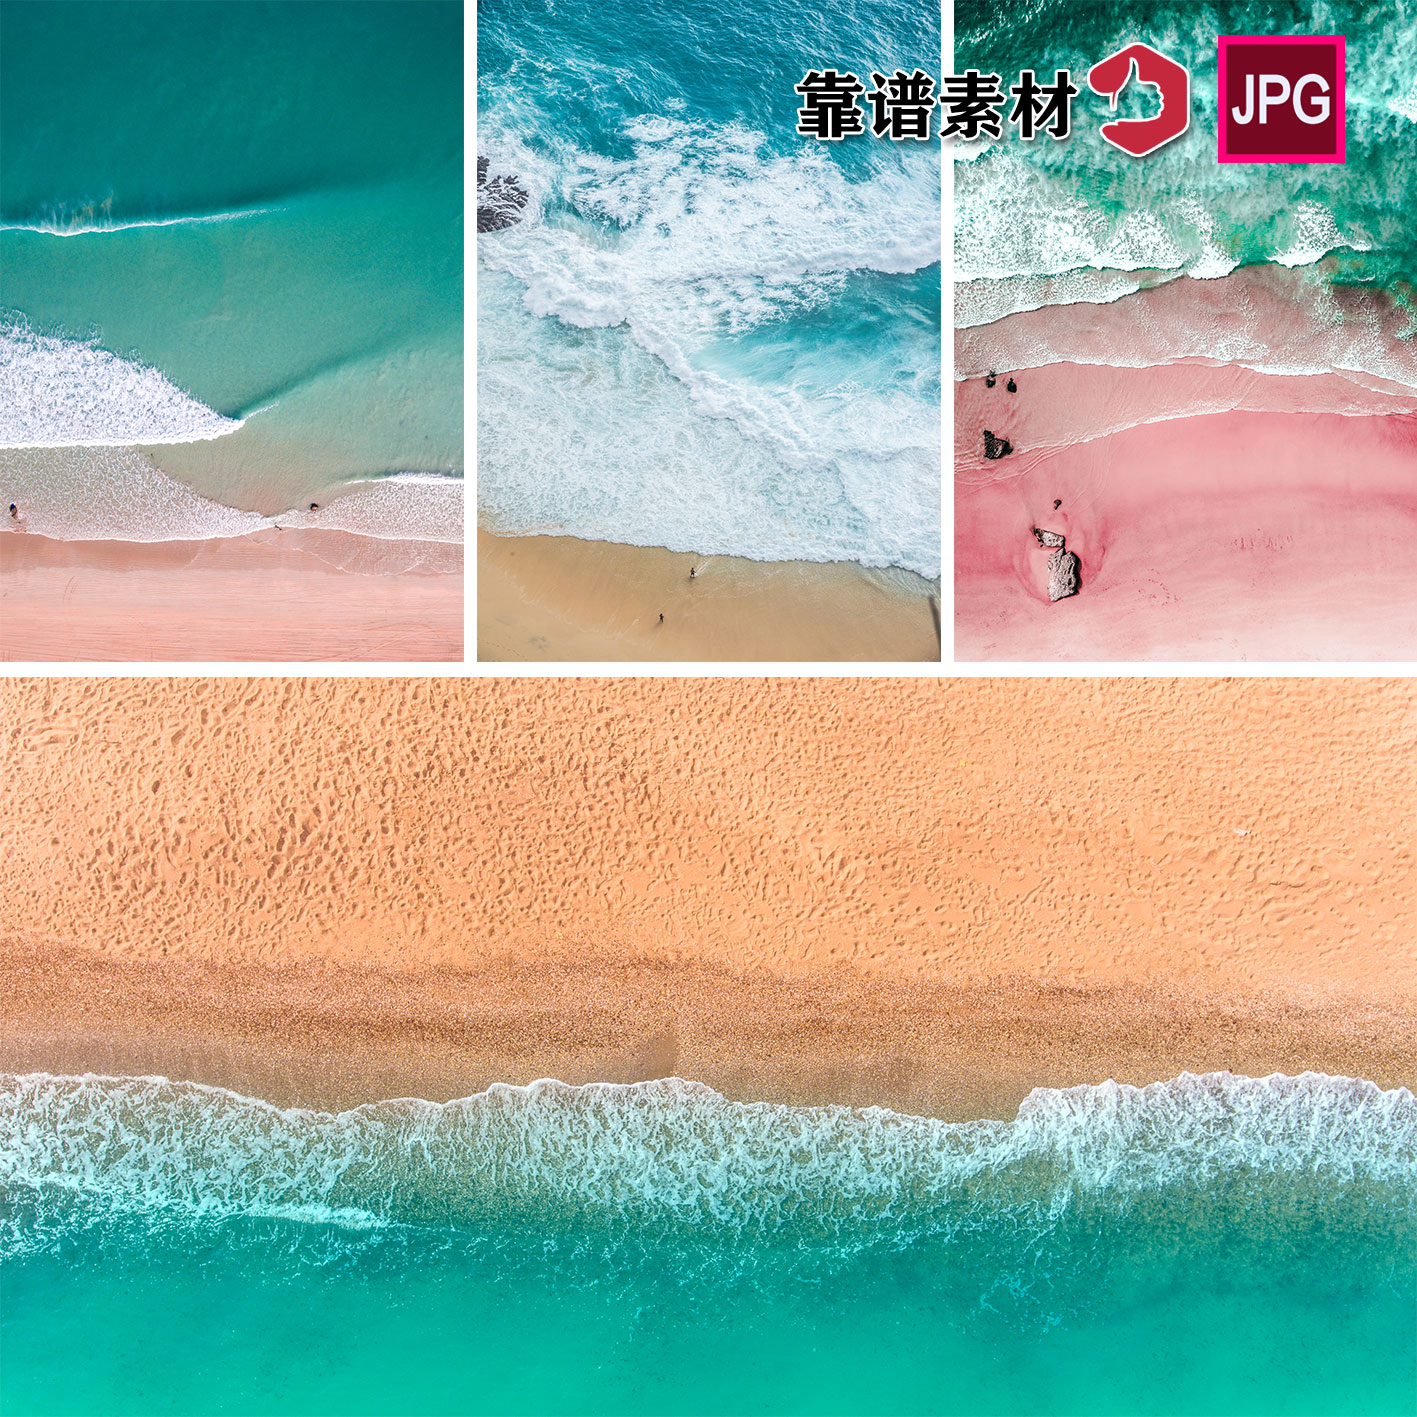 美丽的蓝色海洋装饰画沙滩海滩海边风景高清背景图片设计素材